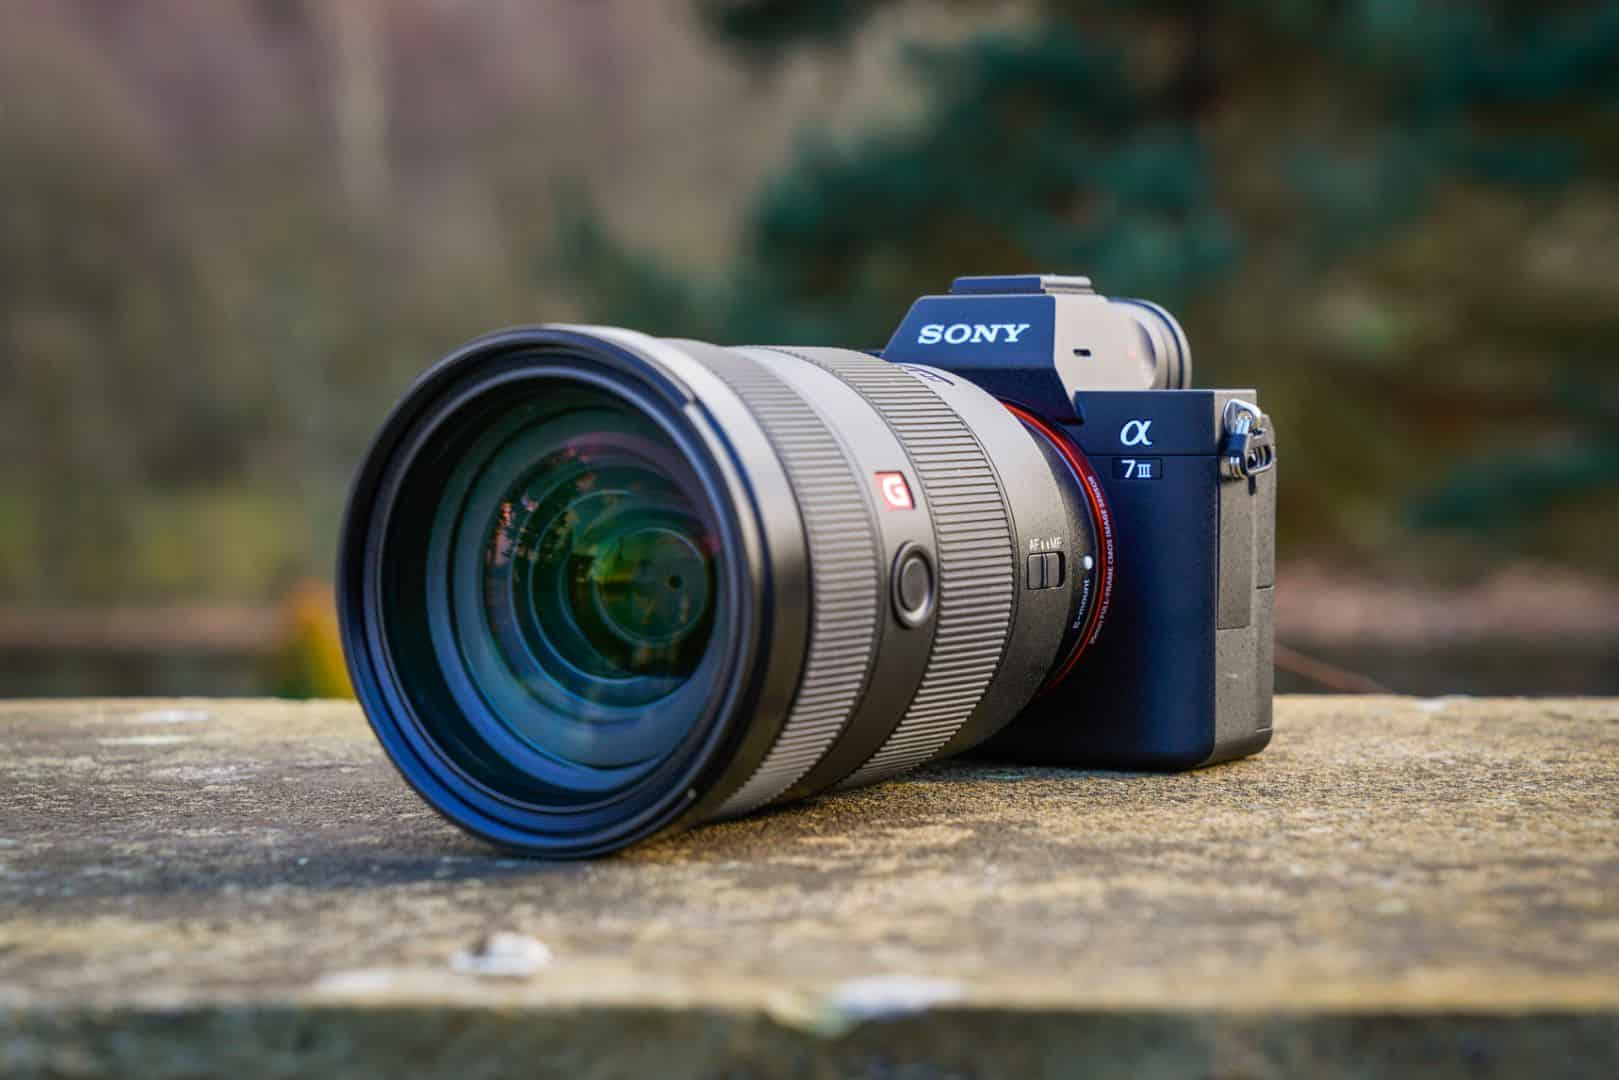 TẾT SUM VẦY - KHOẢNH KHẮC ĐONG ĐẦY, khuyến mãi dịp Tết giảm giá các máy ảnh và ống kính Sony